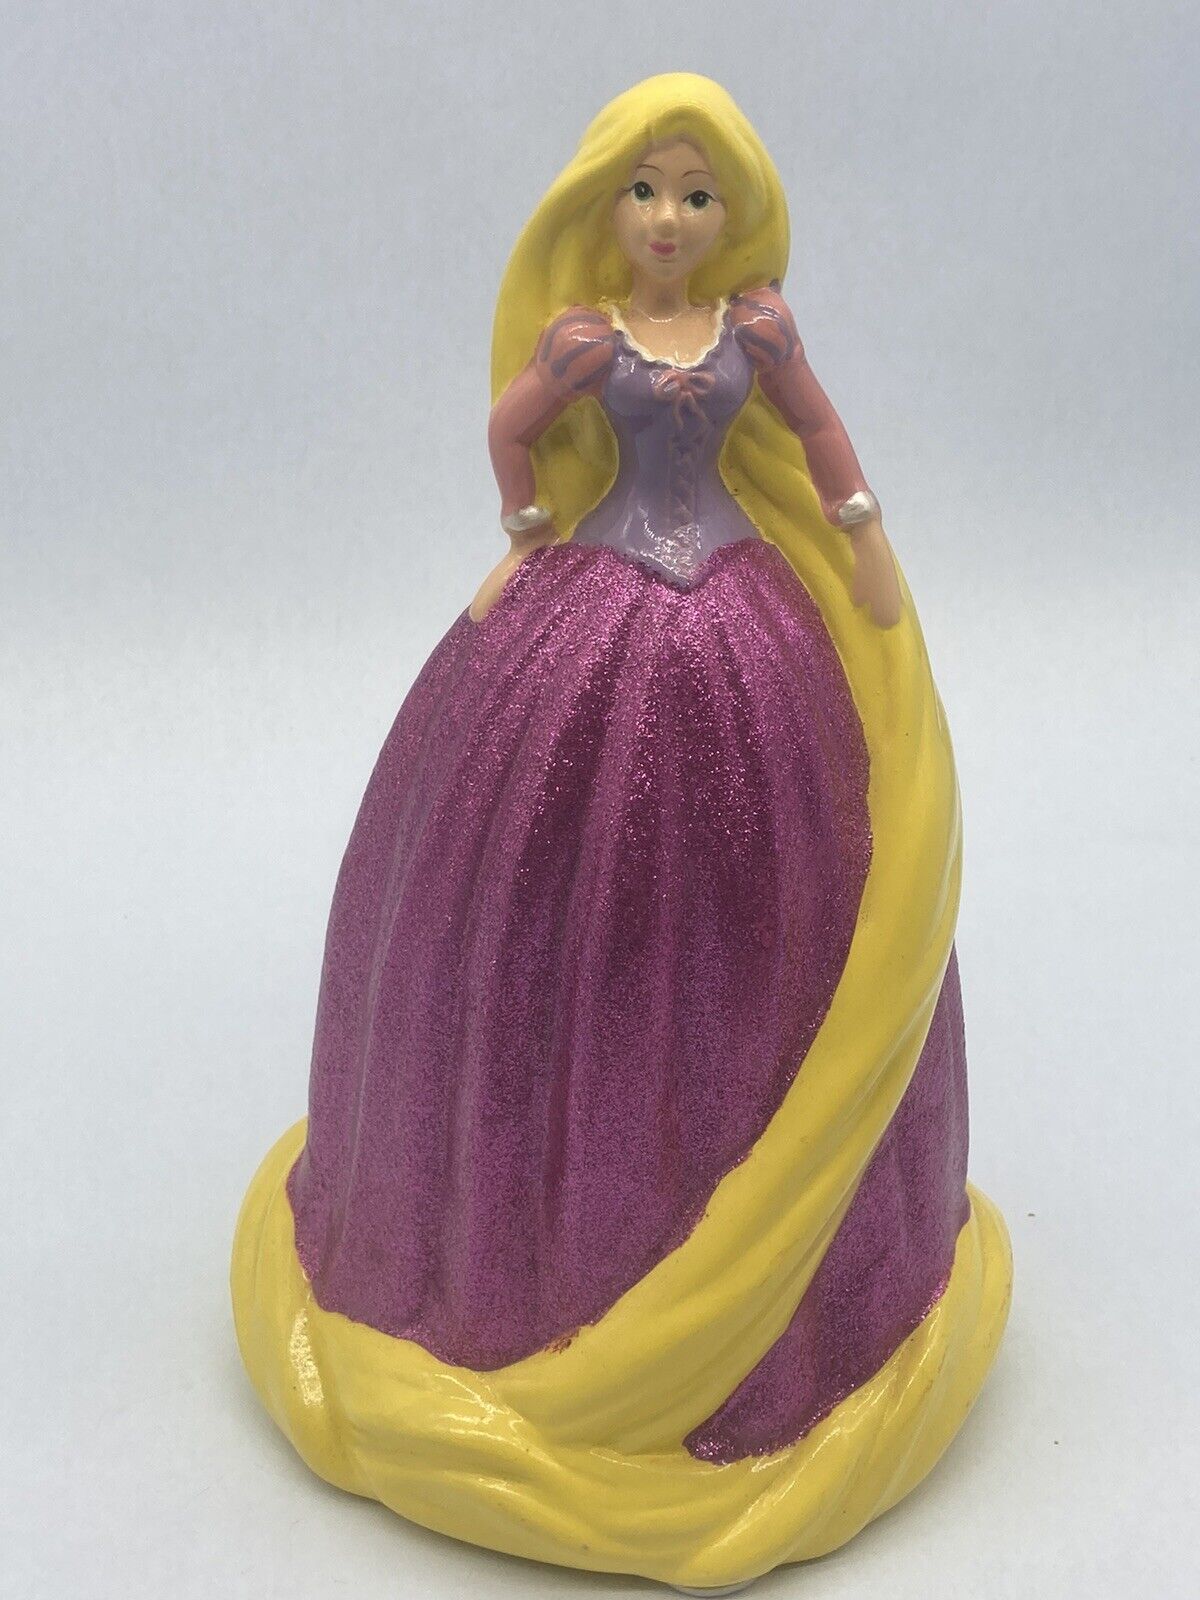 Disney Princess Rapunzel Money/Coin Bank Figurine Glitter Dress 10”